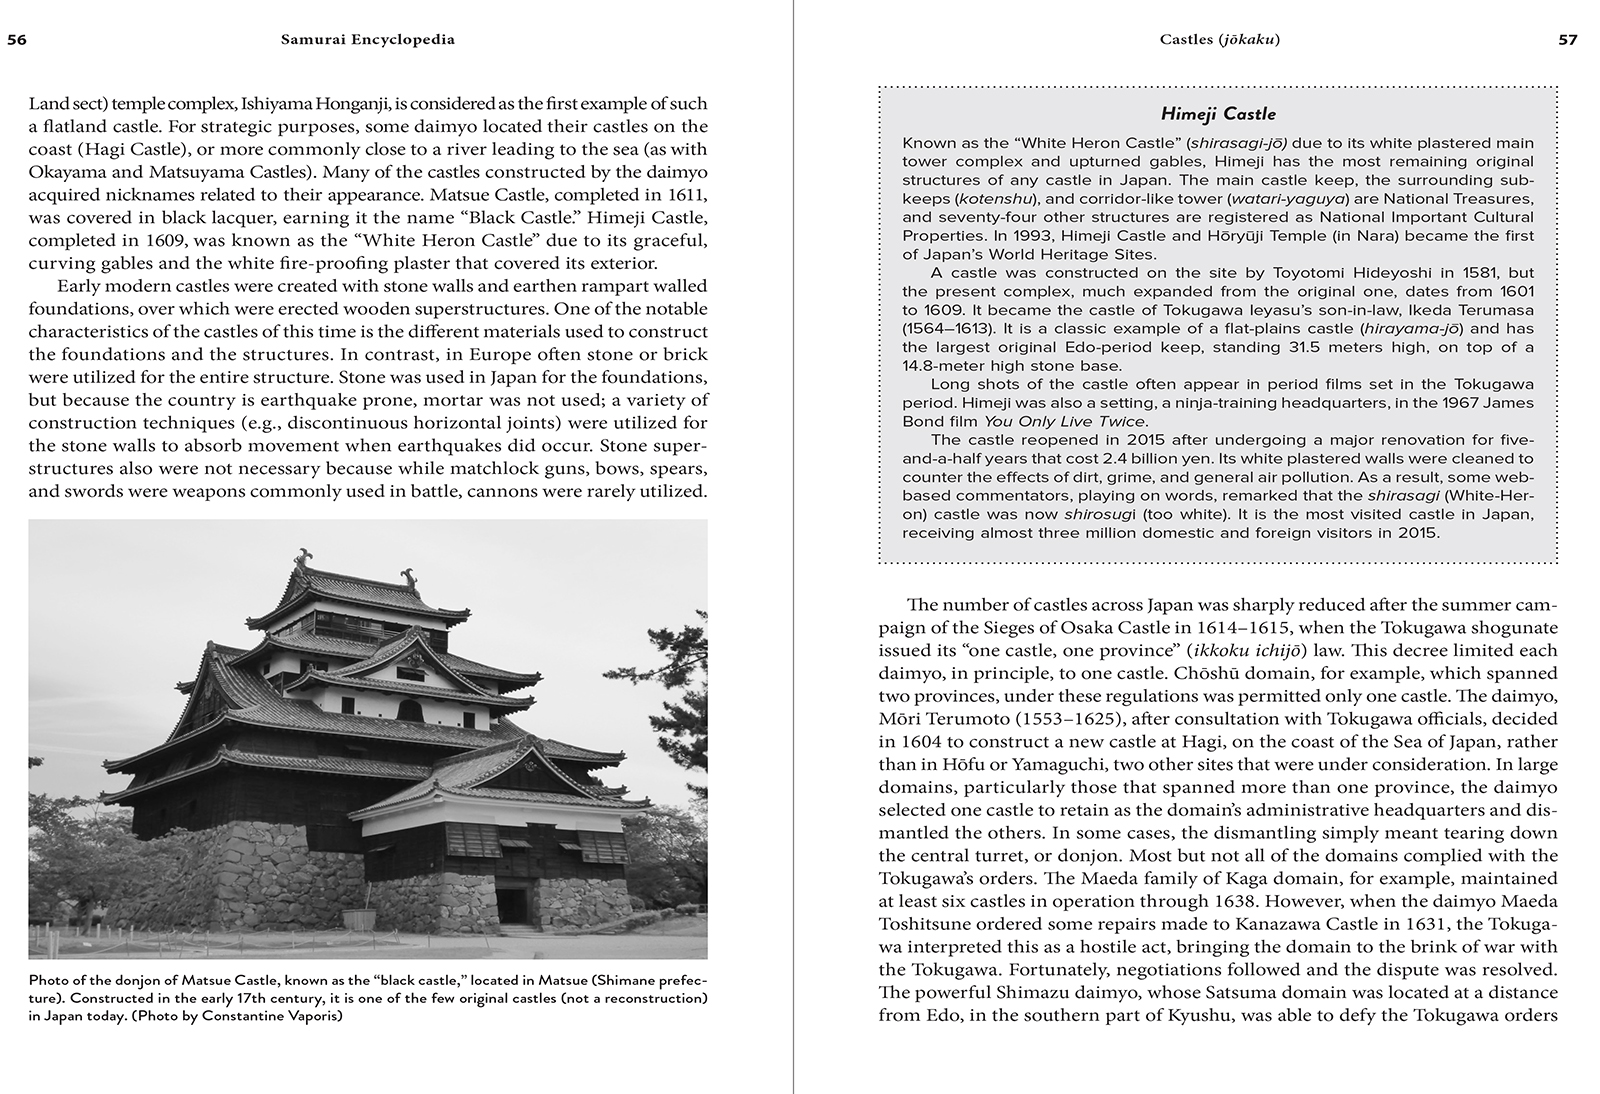 The Samurai Encyclopedia